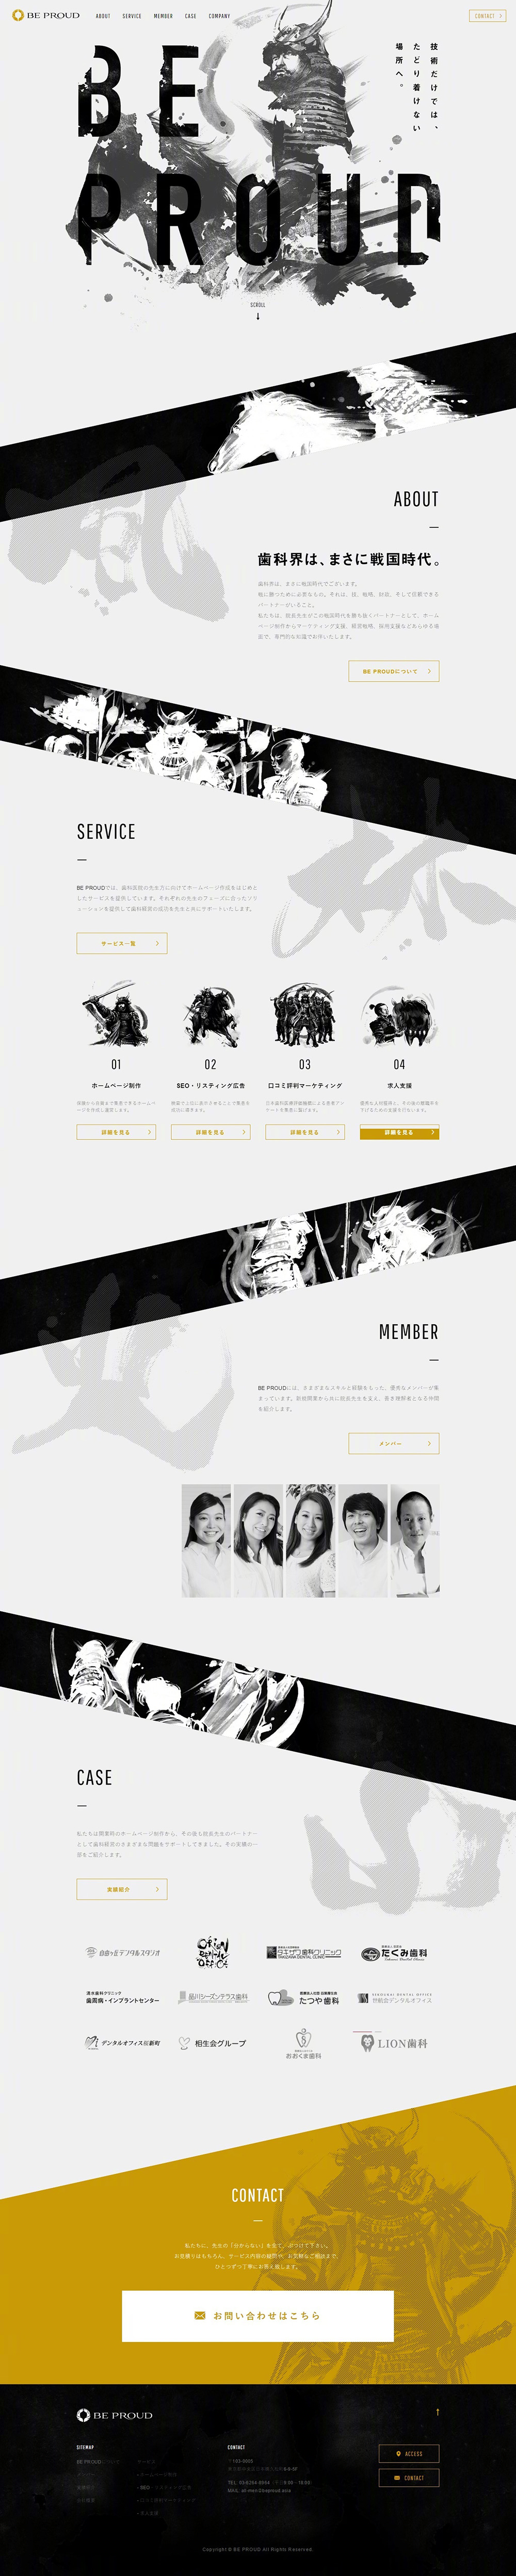 日式网页设计的出色表现方式